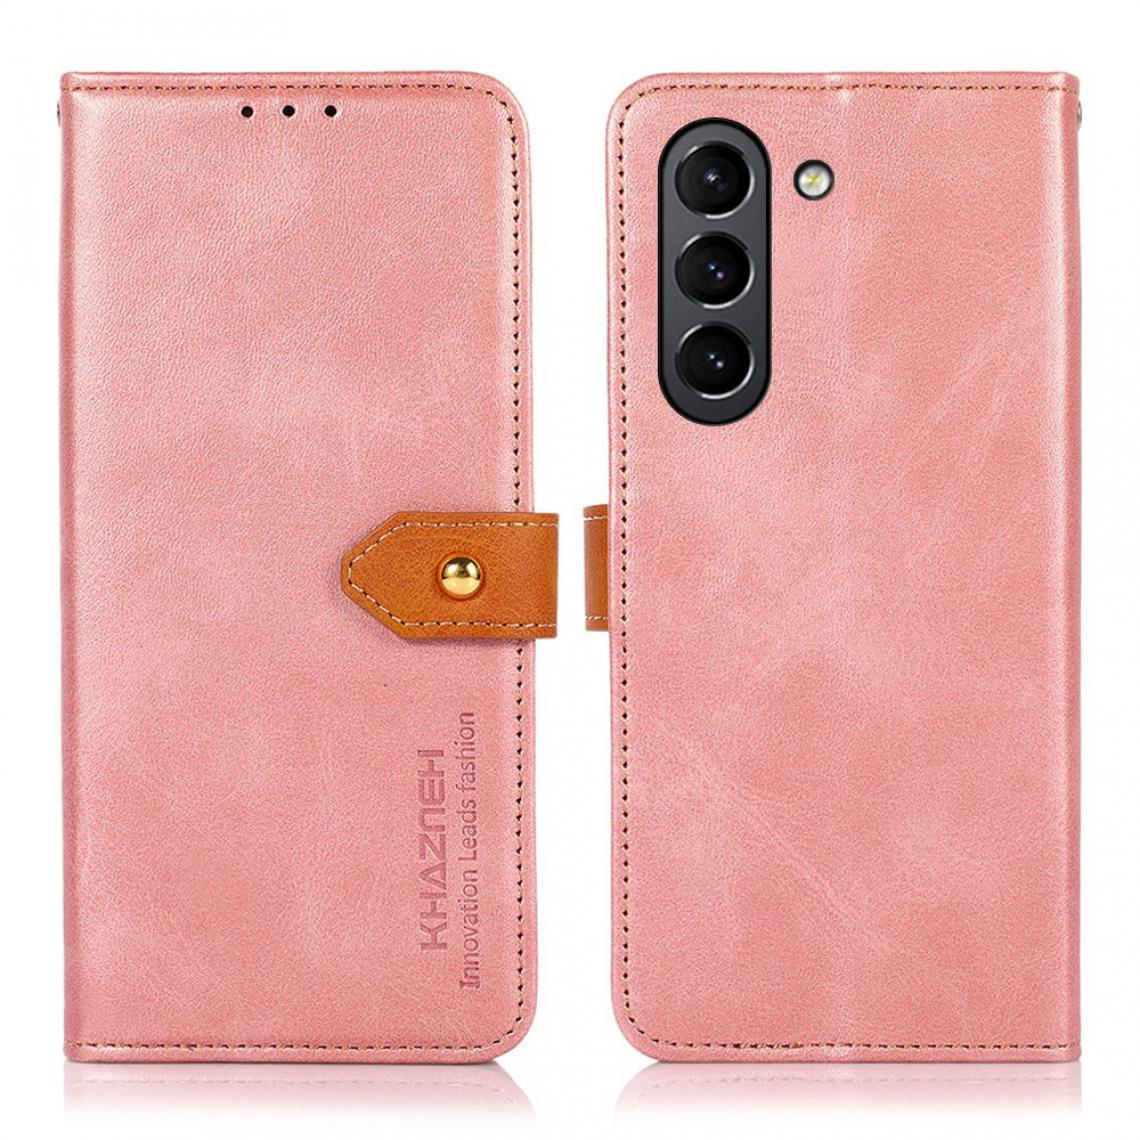 Other - Etui en PU Fermoir magnétique doré avec support or rose pour votre Samsung Galaxy S21 FE - Coque, étui smartphone